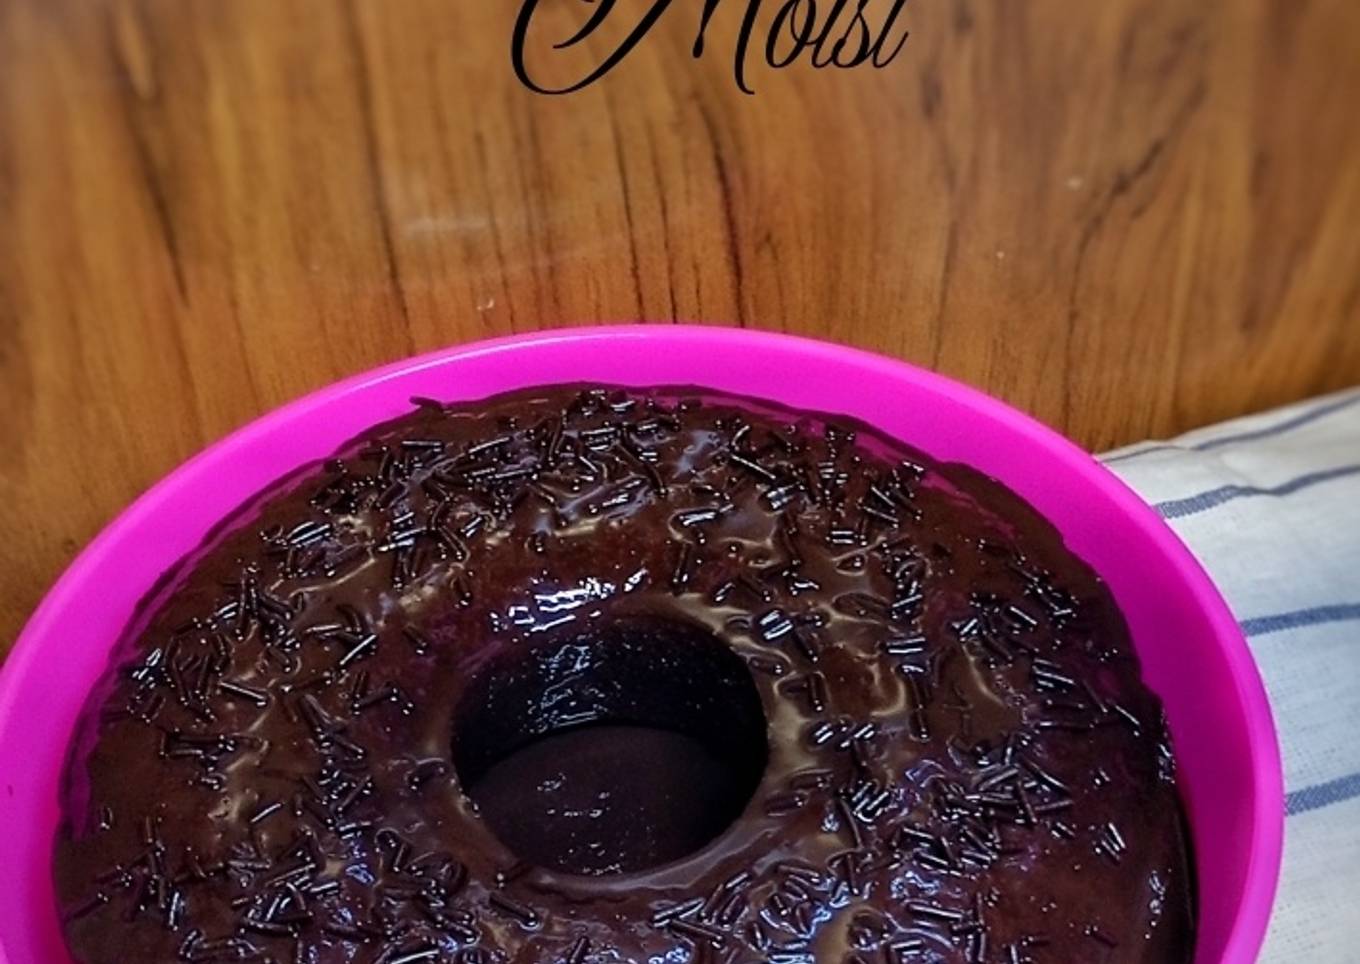 Resepi Kek Coklat moist yang Menggugah Selera dan Ringkas